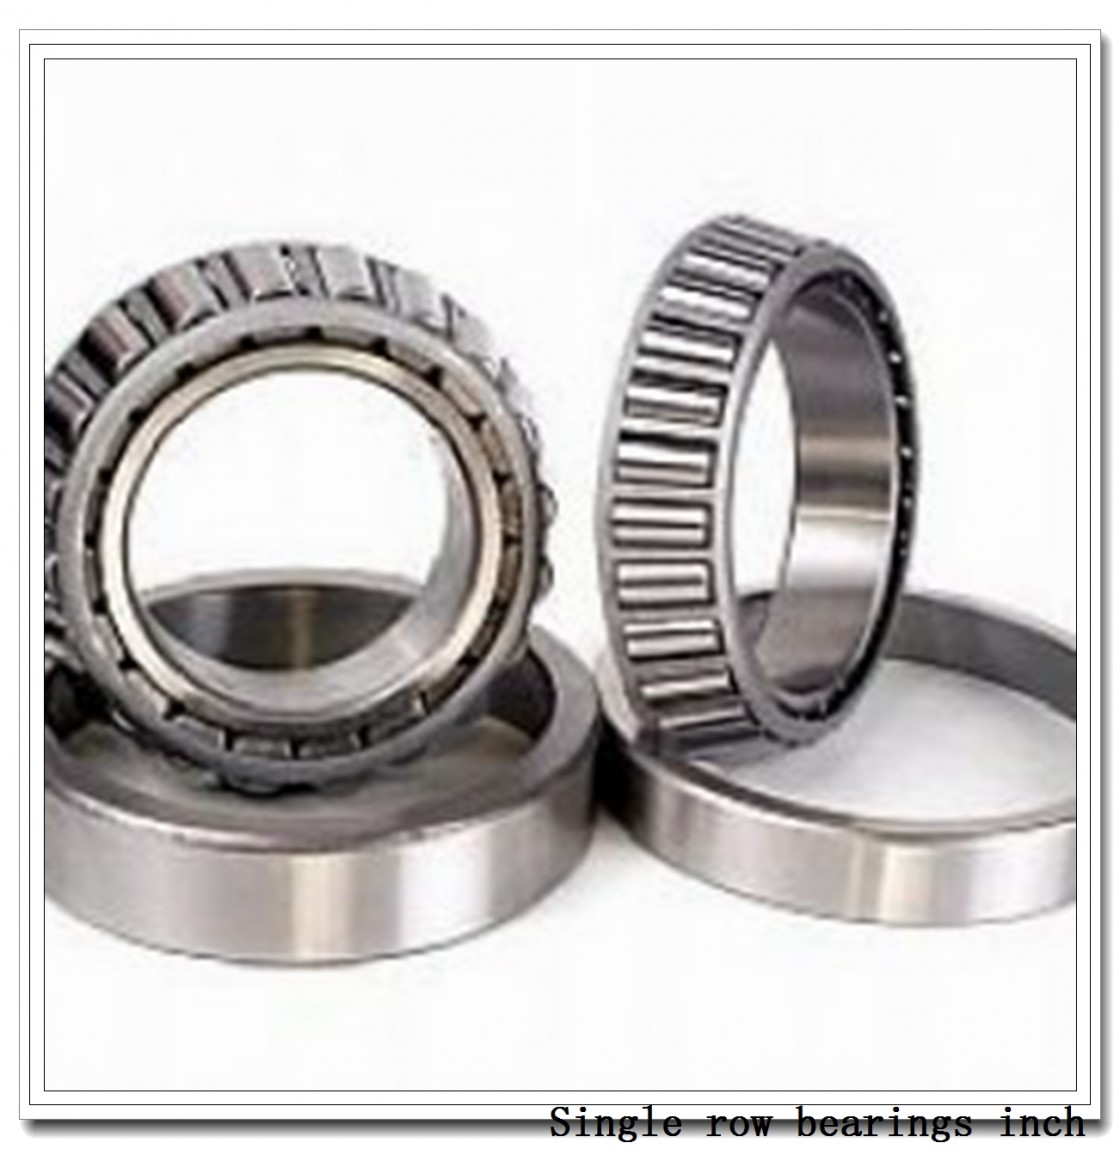 30326 Single row bearings inch